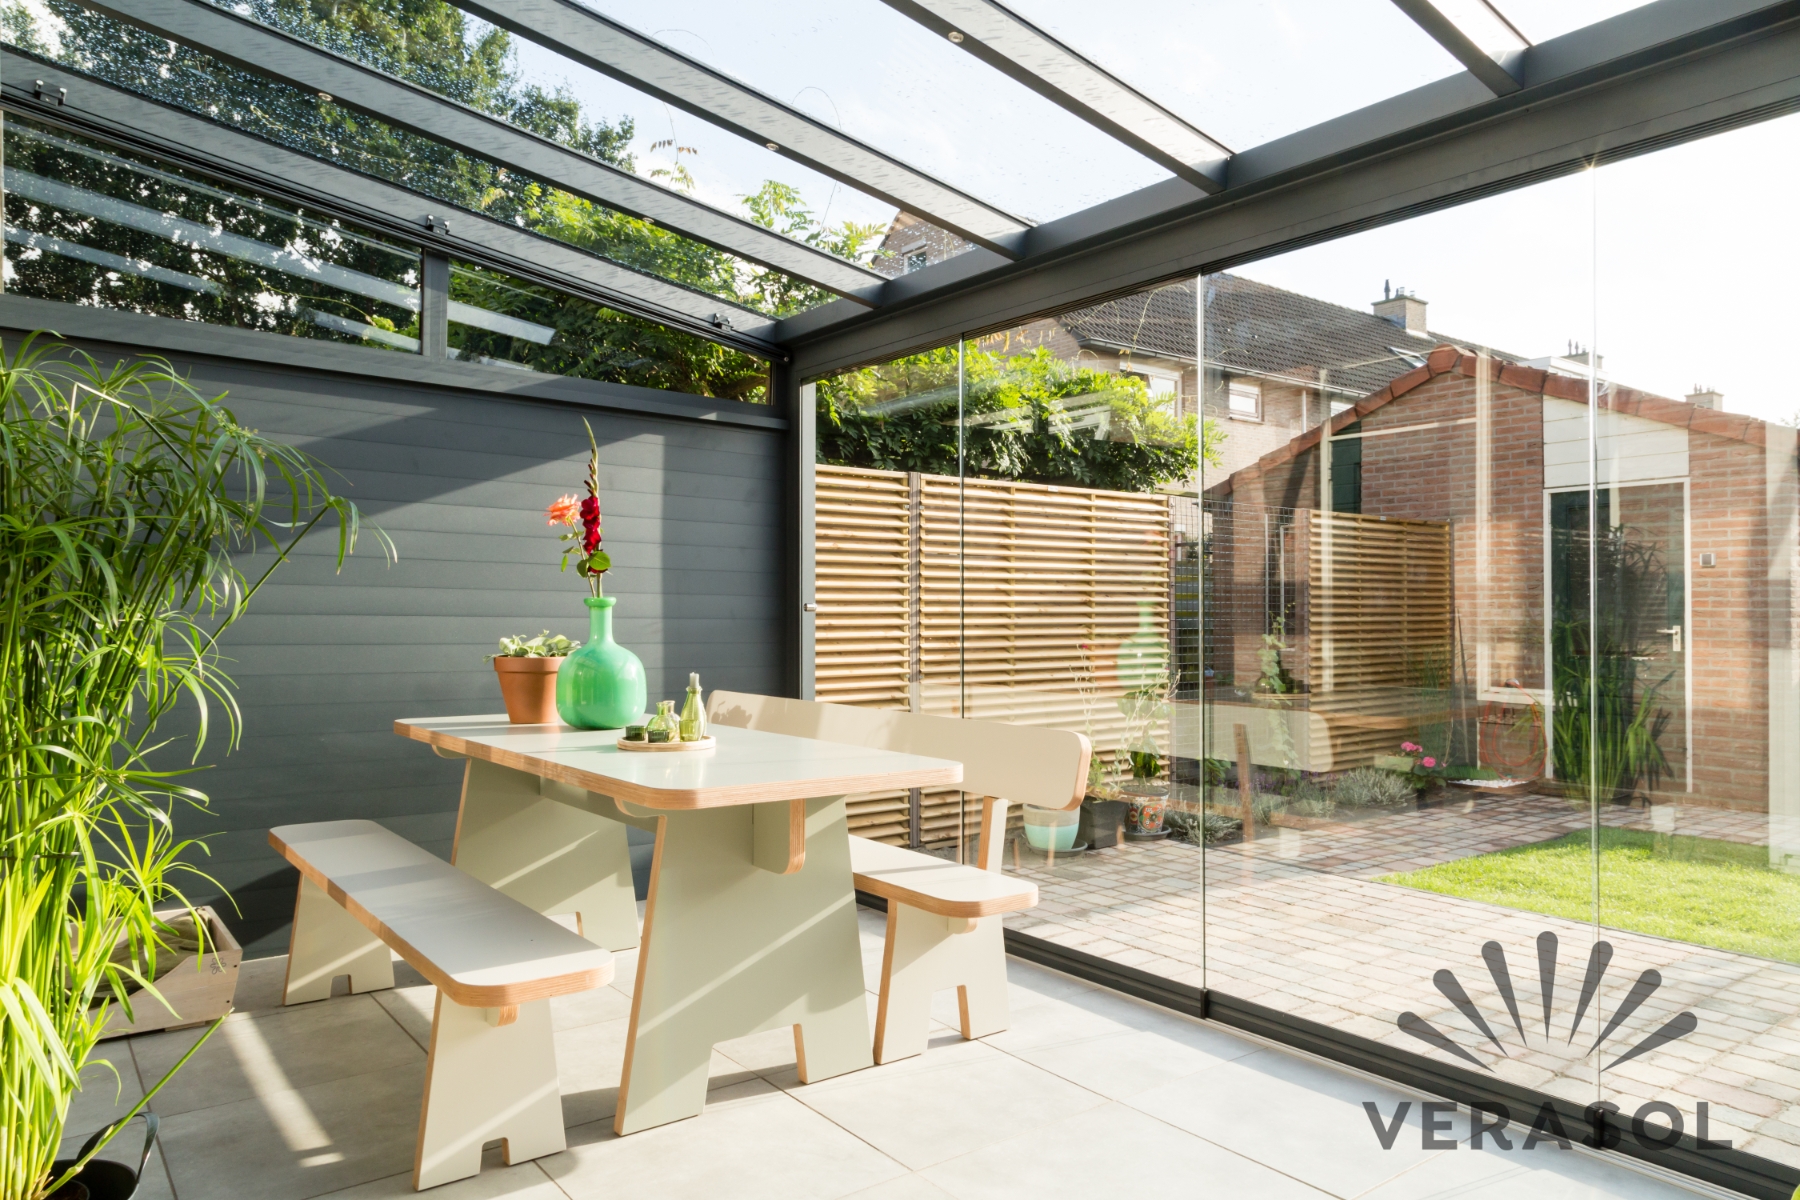 Foto : De mooiste Verasol veranda's